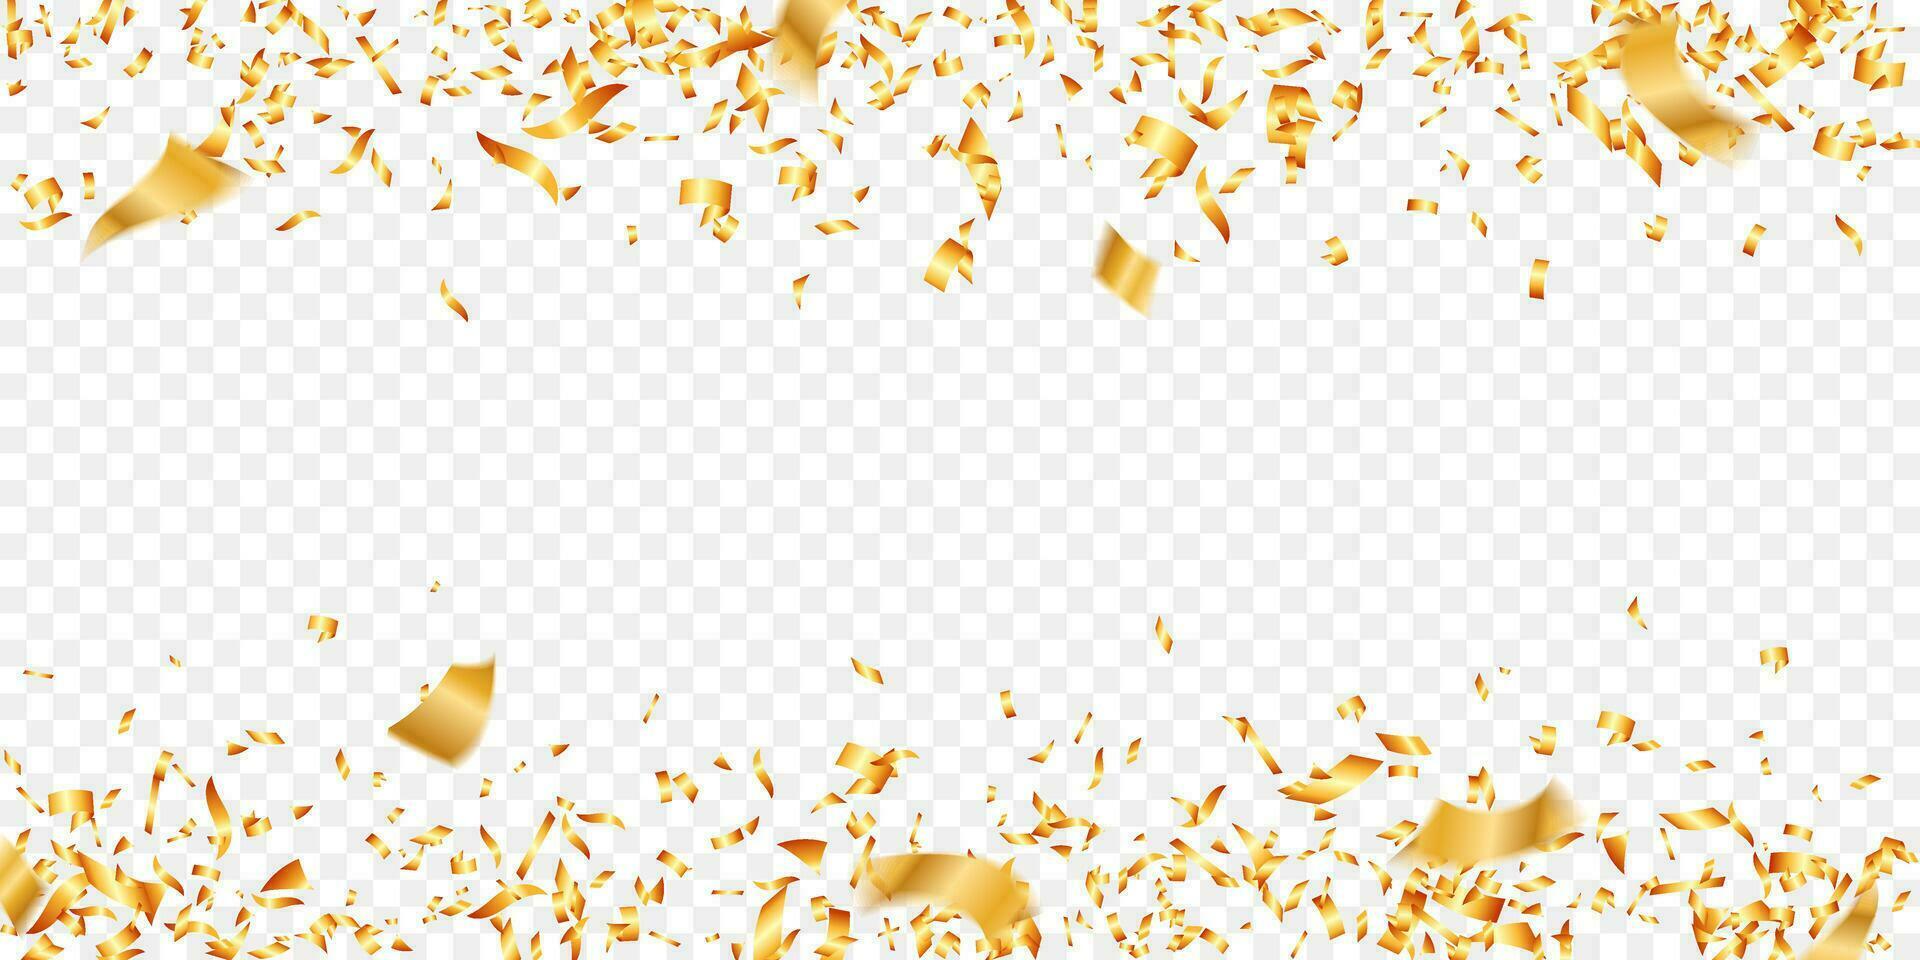 oro reluciente papel picado antecedentes para día festivo, cumpleaños, fiesta y celebracion vector